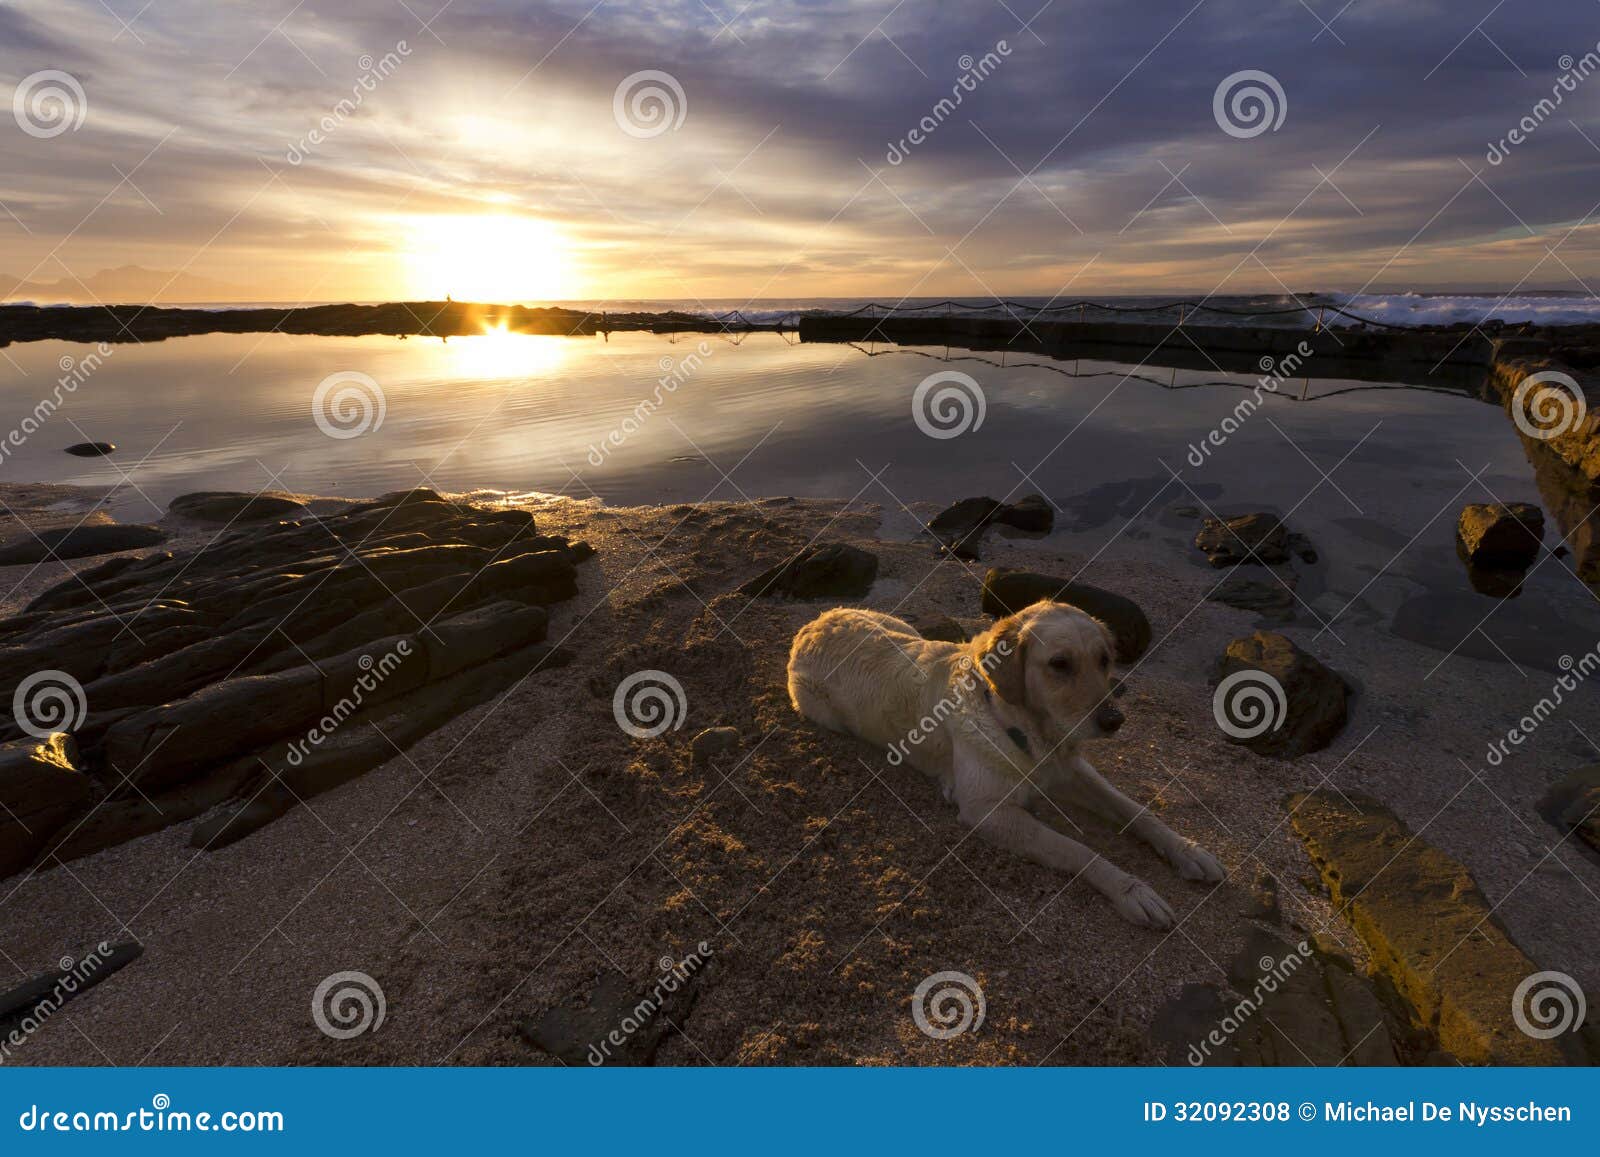 Retriever на пляже на восходе солнца. Золотой retriever лежа на пляже около приливного бассейна на восходе солнца.  Подсвеченный восходящим солнцем.